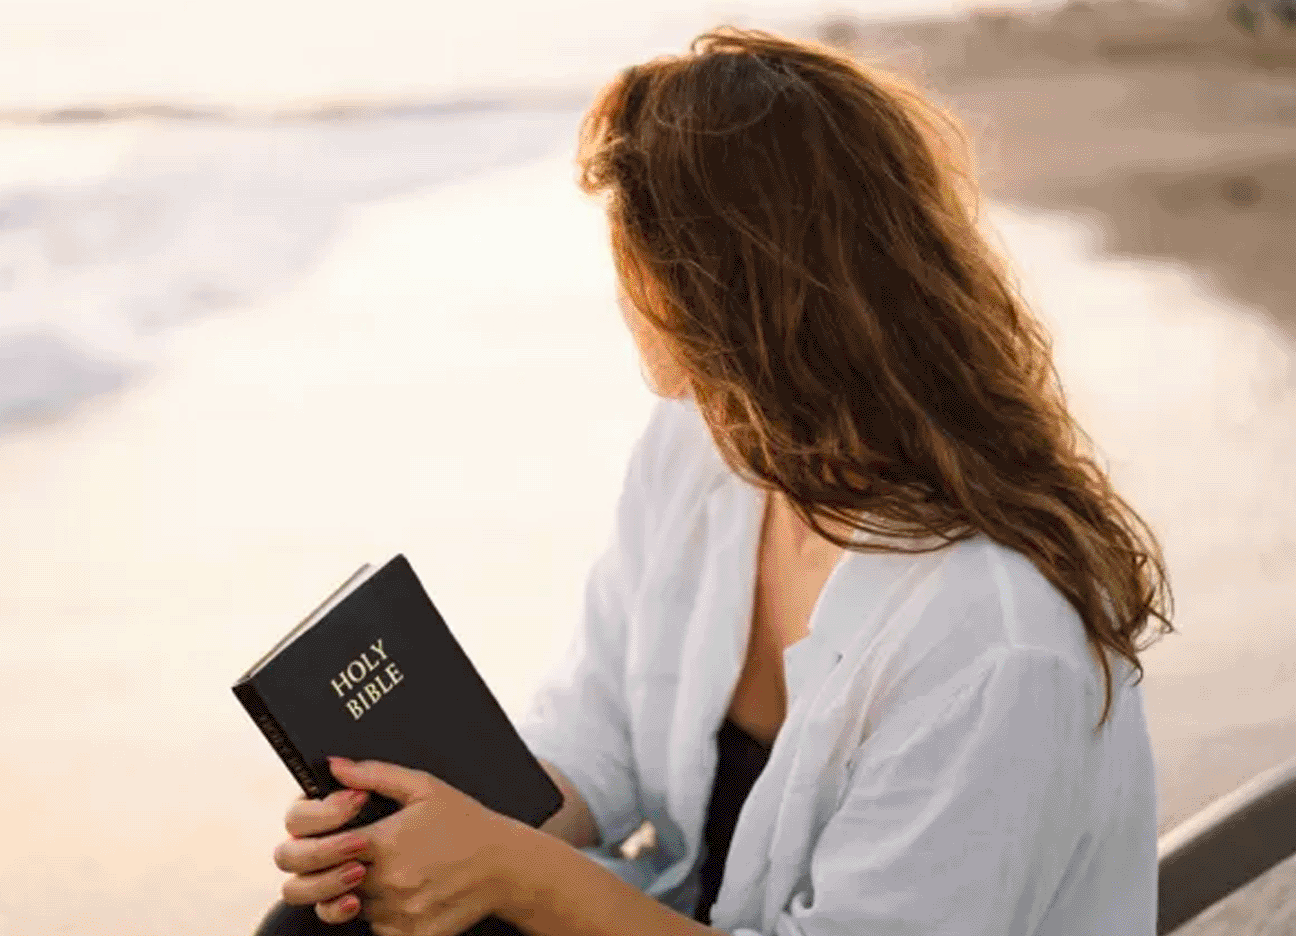 Sáu vị Thánh mang lại nguồn cảm hứng cho phụ nữ trên hành trình Đức tin